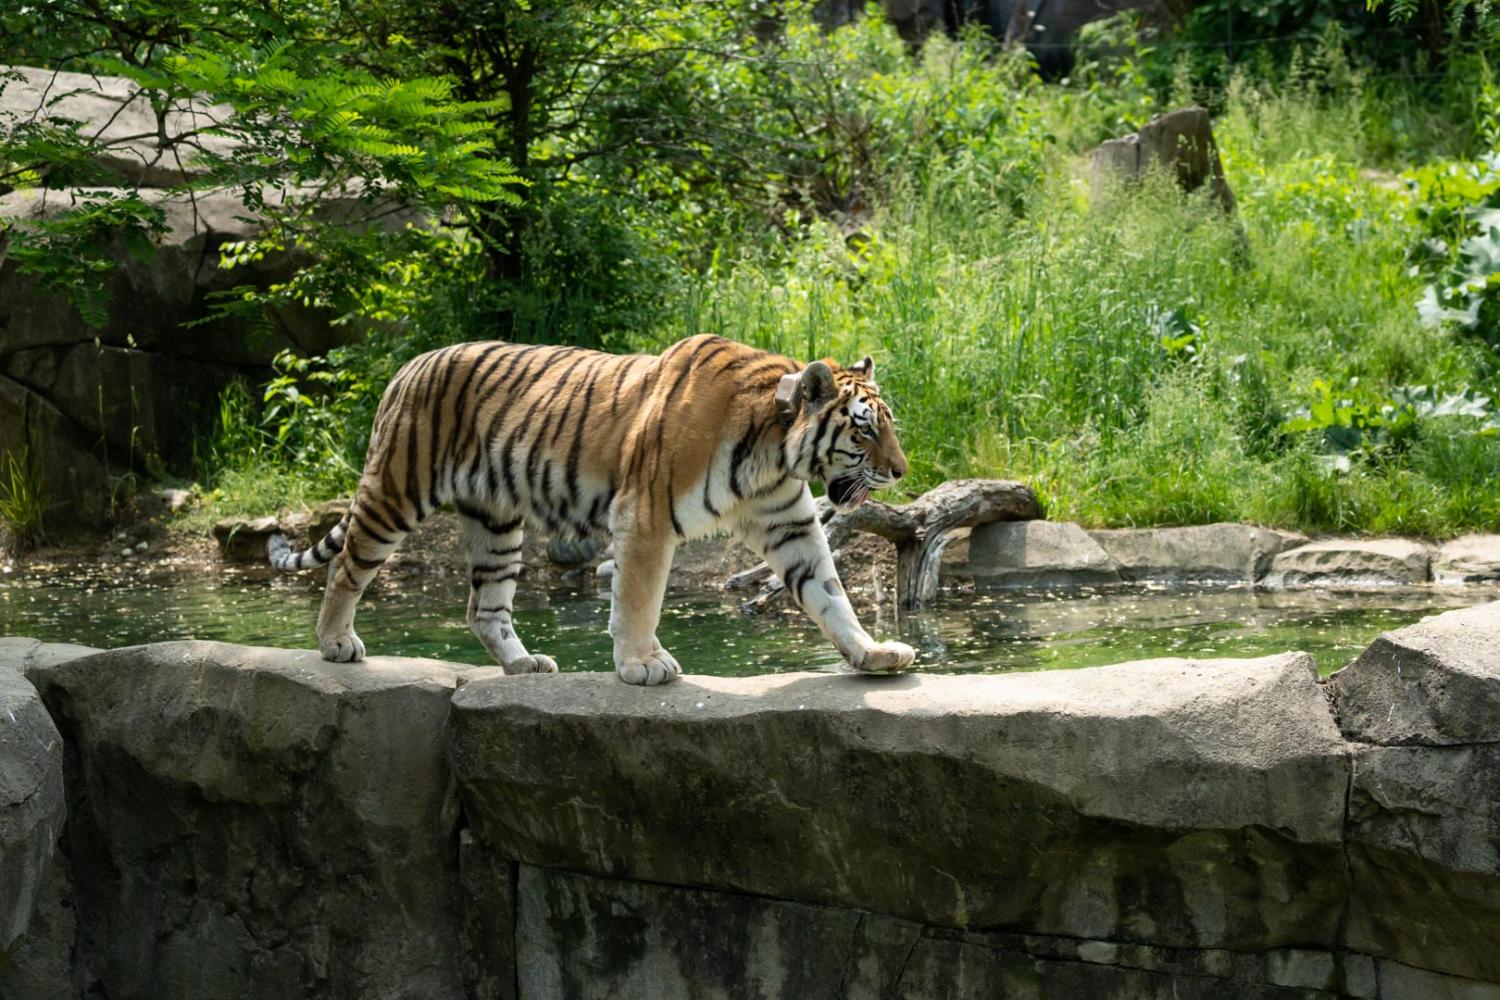 Tiger walking through Zoo habitat